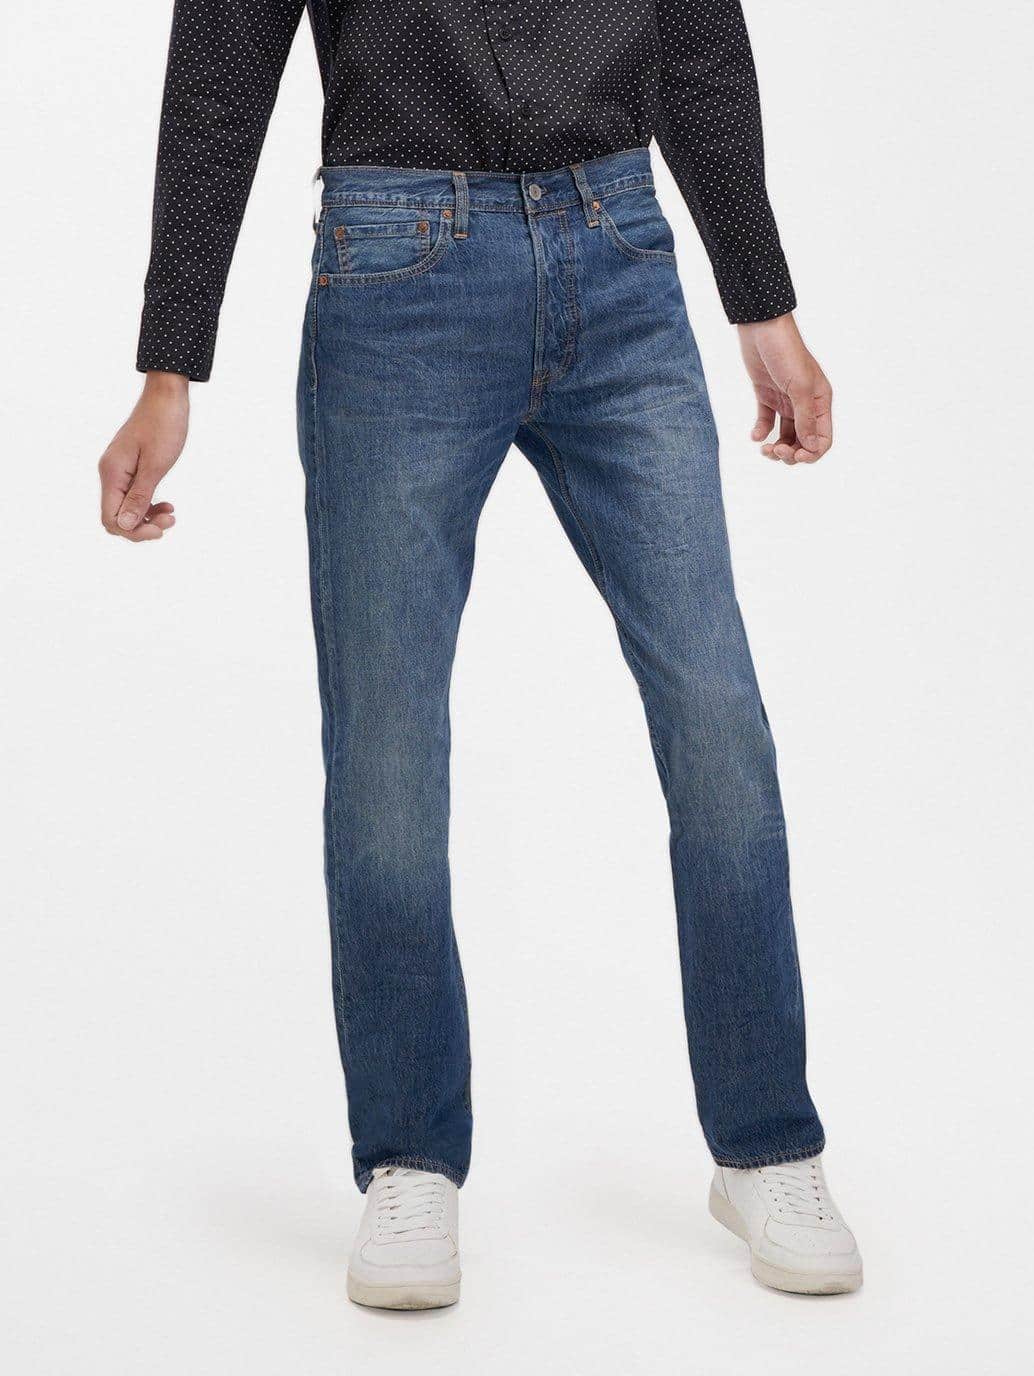 Levi's® MY 501® Original Fit Jeans for Men - 005012964